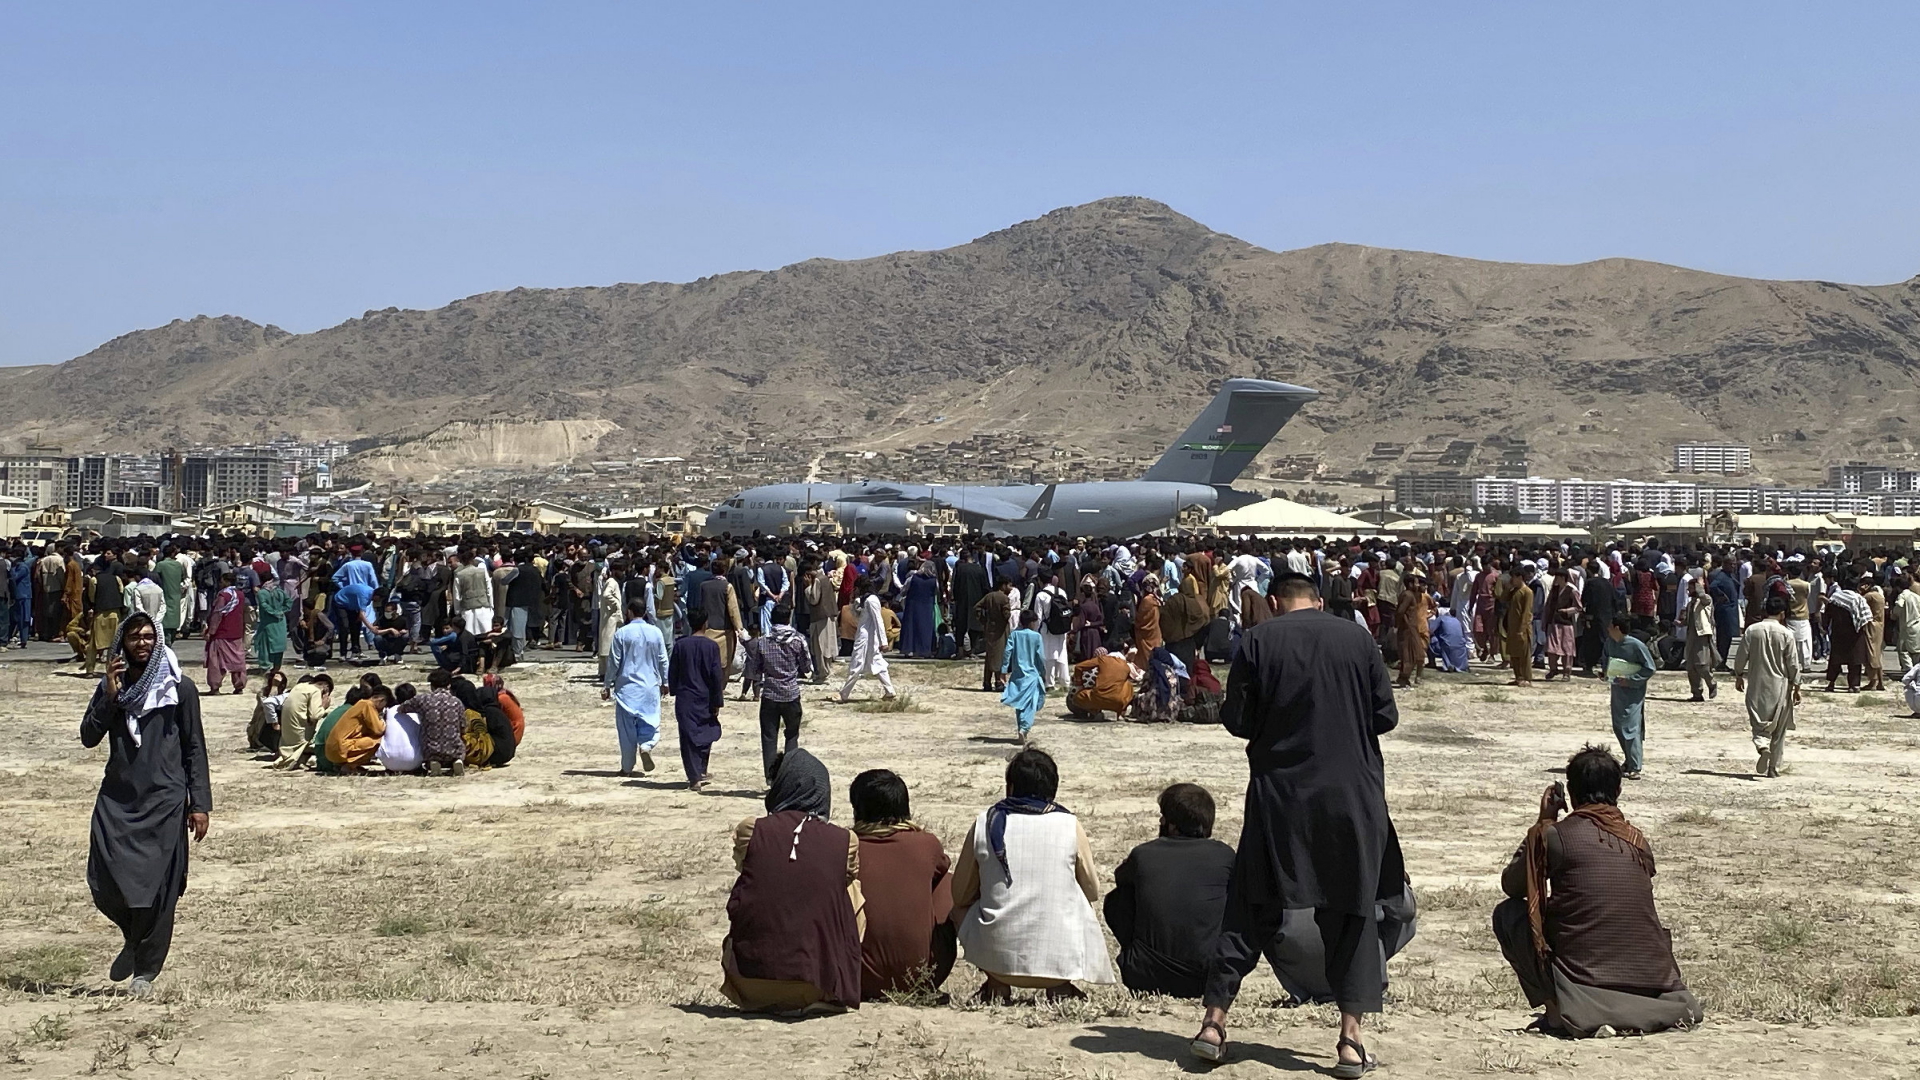 Zahlreiche Menschen versammeln sich in der Nähe eines US-amerikanischen Militärflugzeugs auf dem Gelände des Kabuler Flughafens.